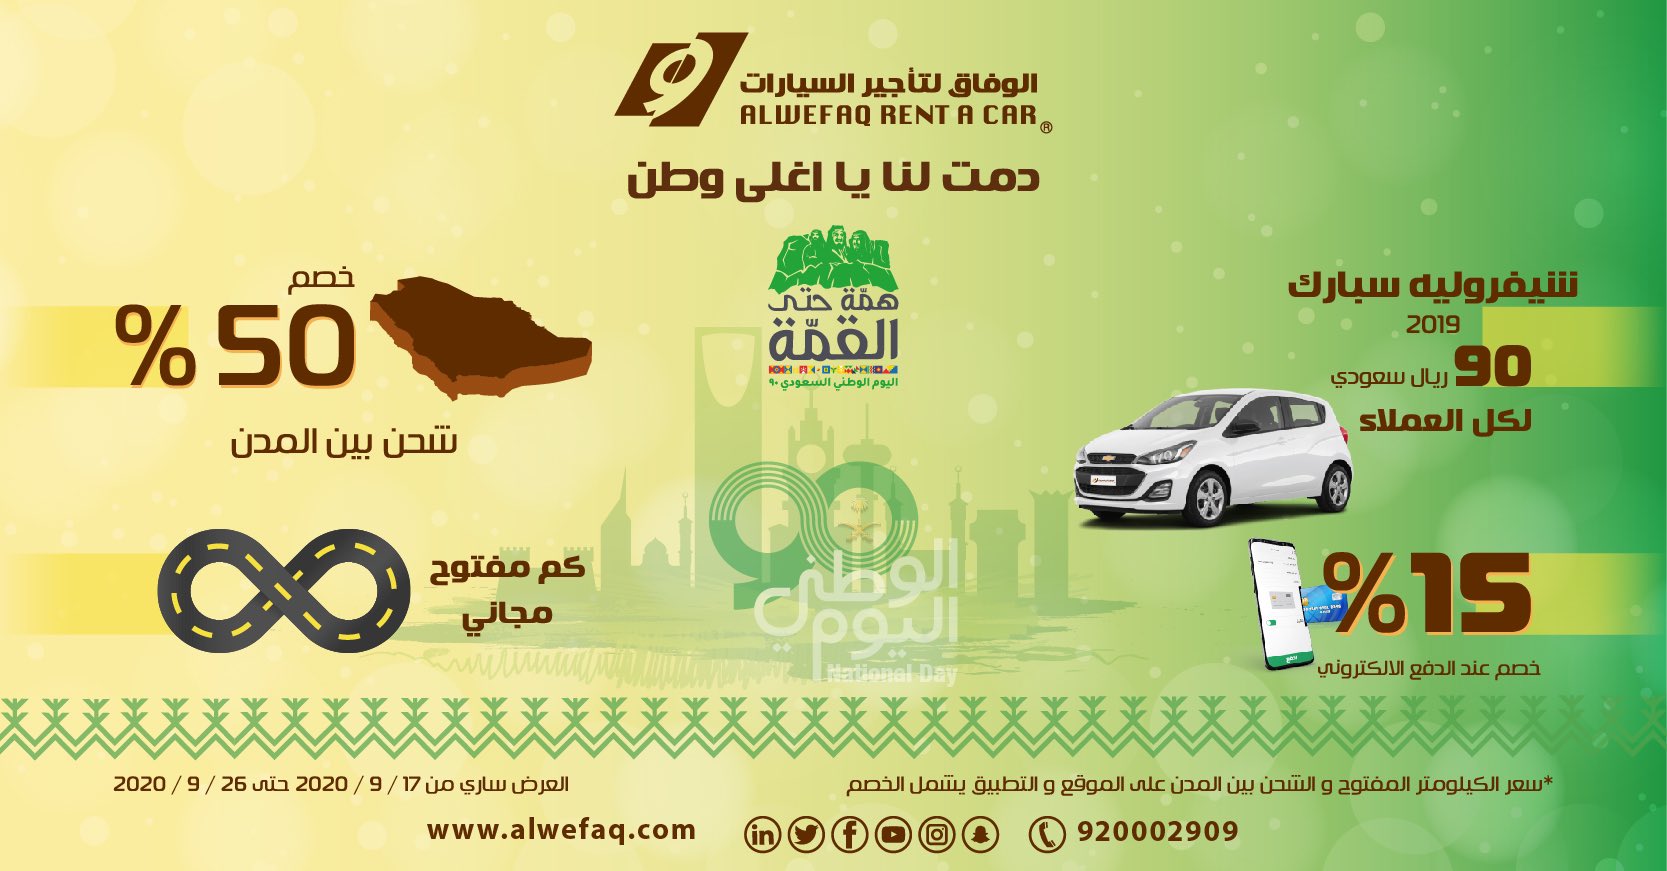 السيارات الوفاق لتأجير وظائف خاليه